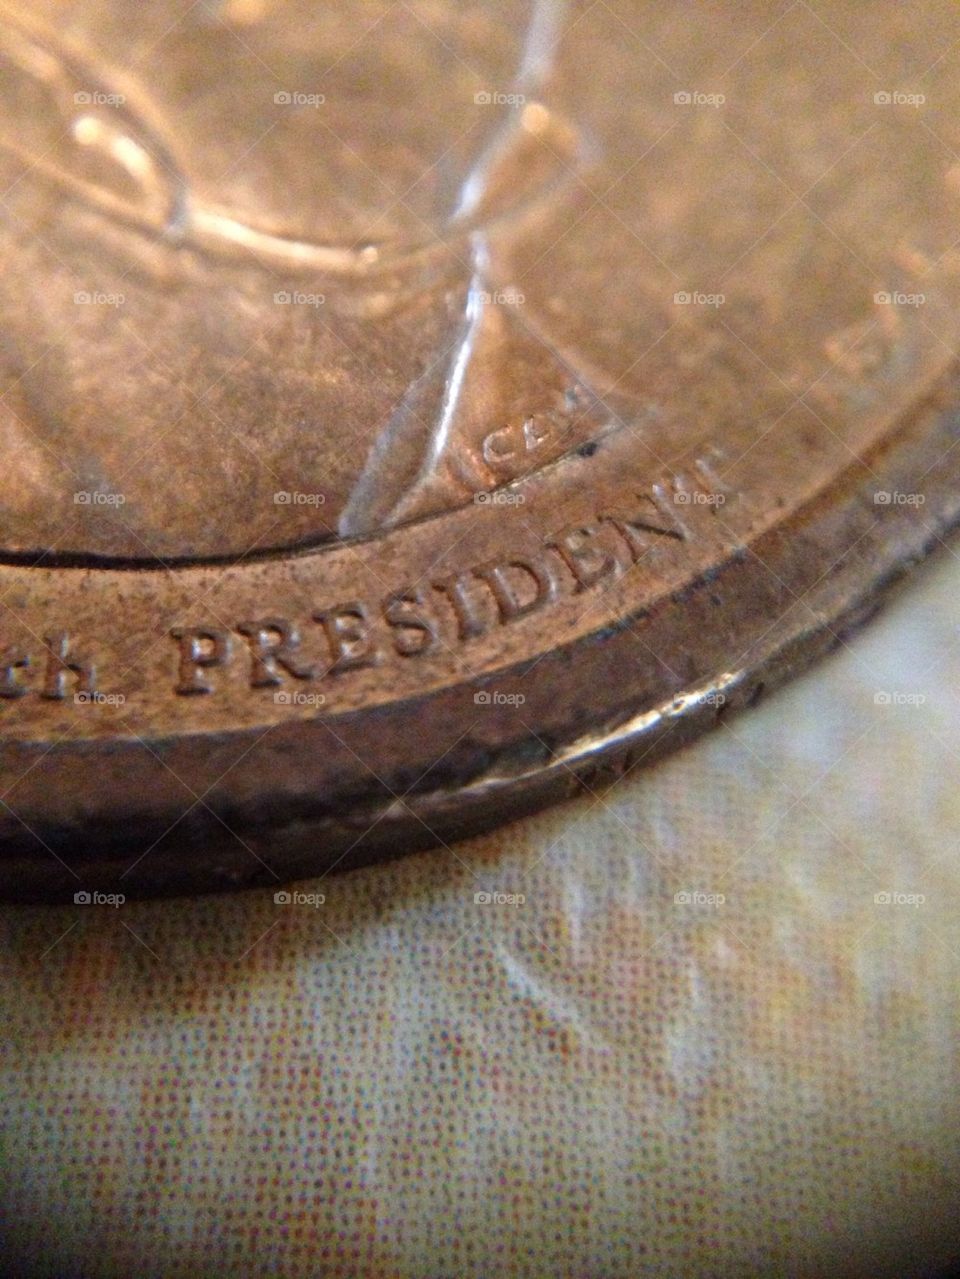 Macro shot of a coin